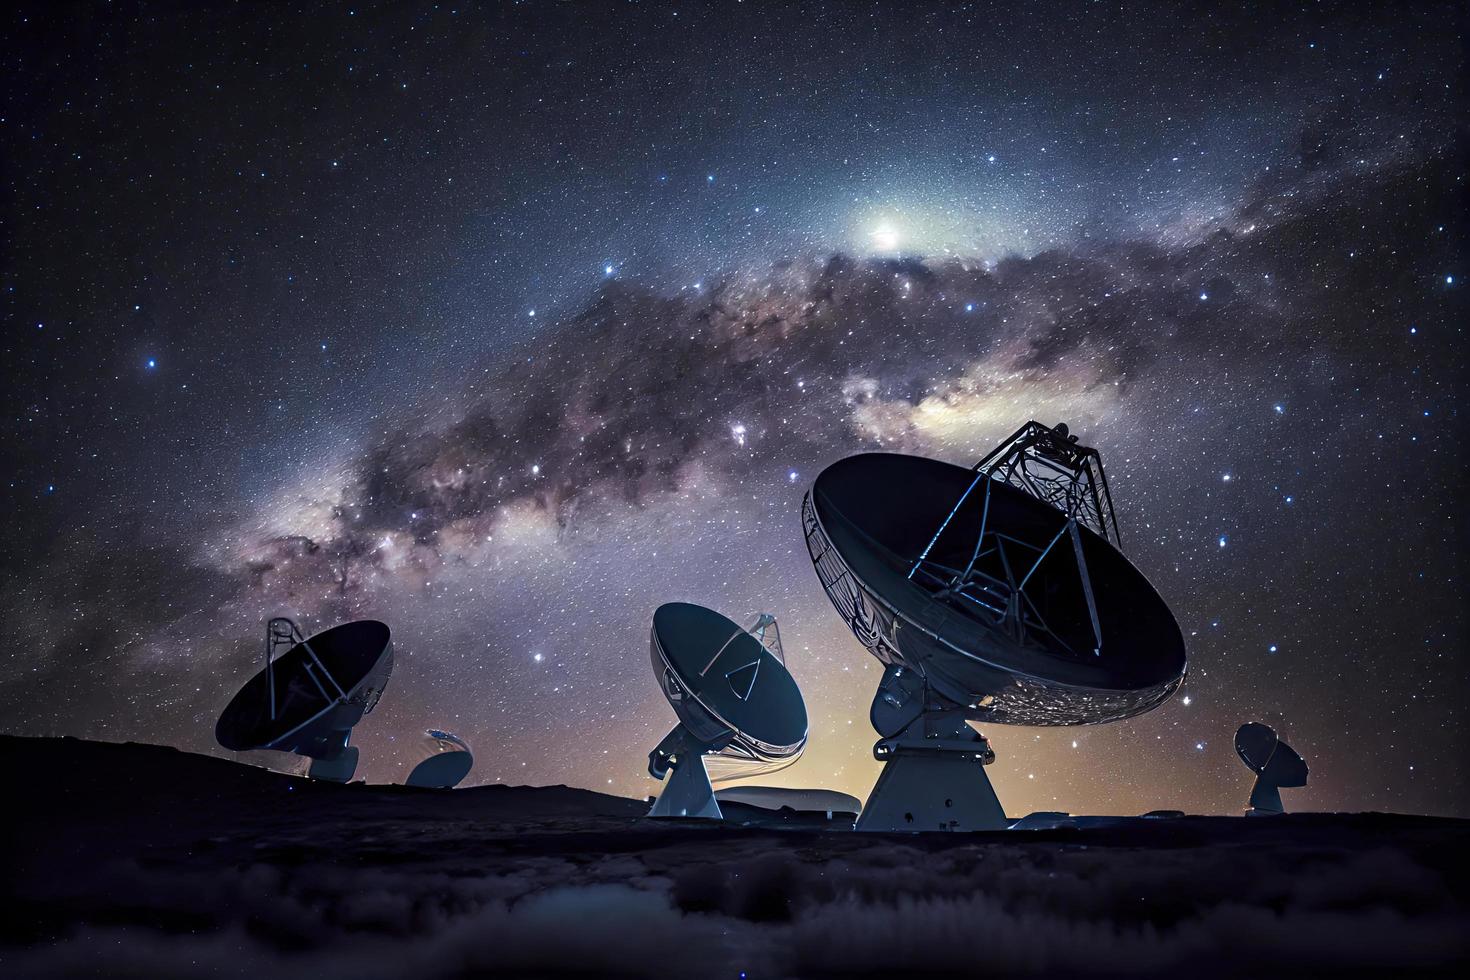 astronomia in profondità spazio Radio telescopio array a notte puntamento in spazio foto